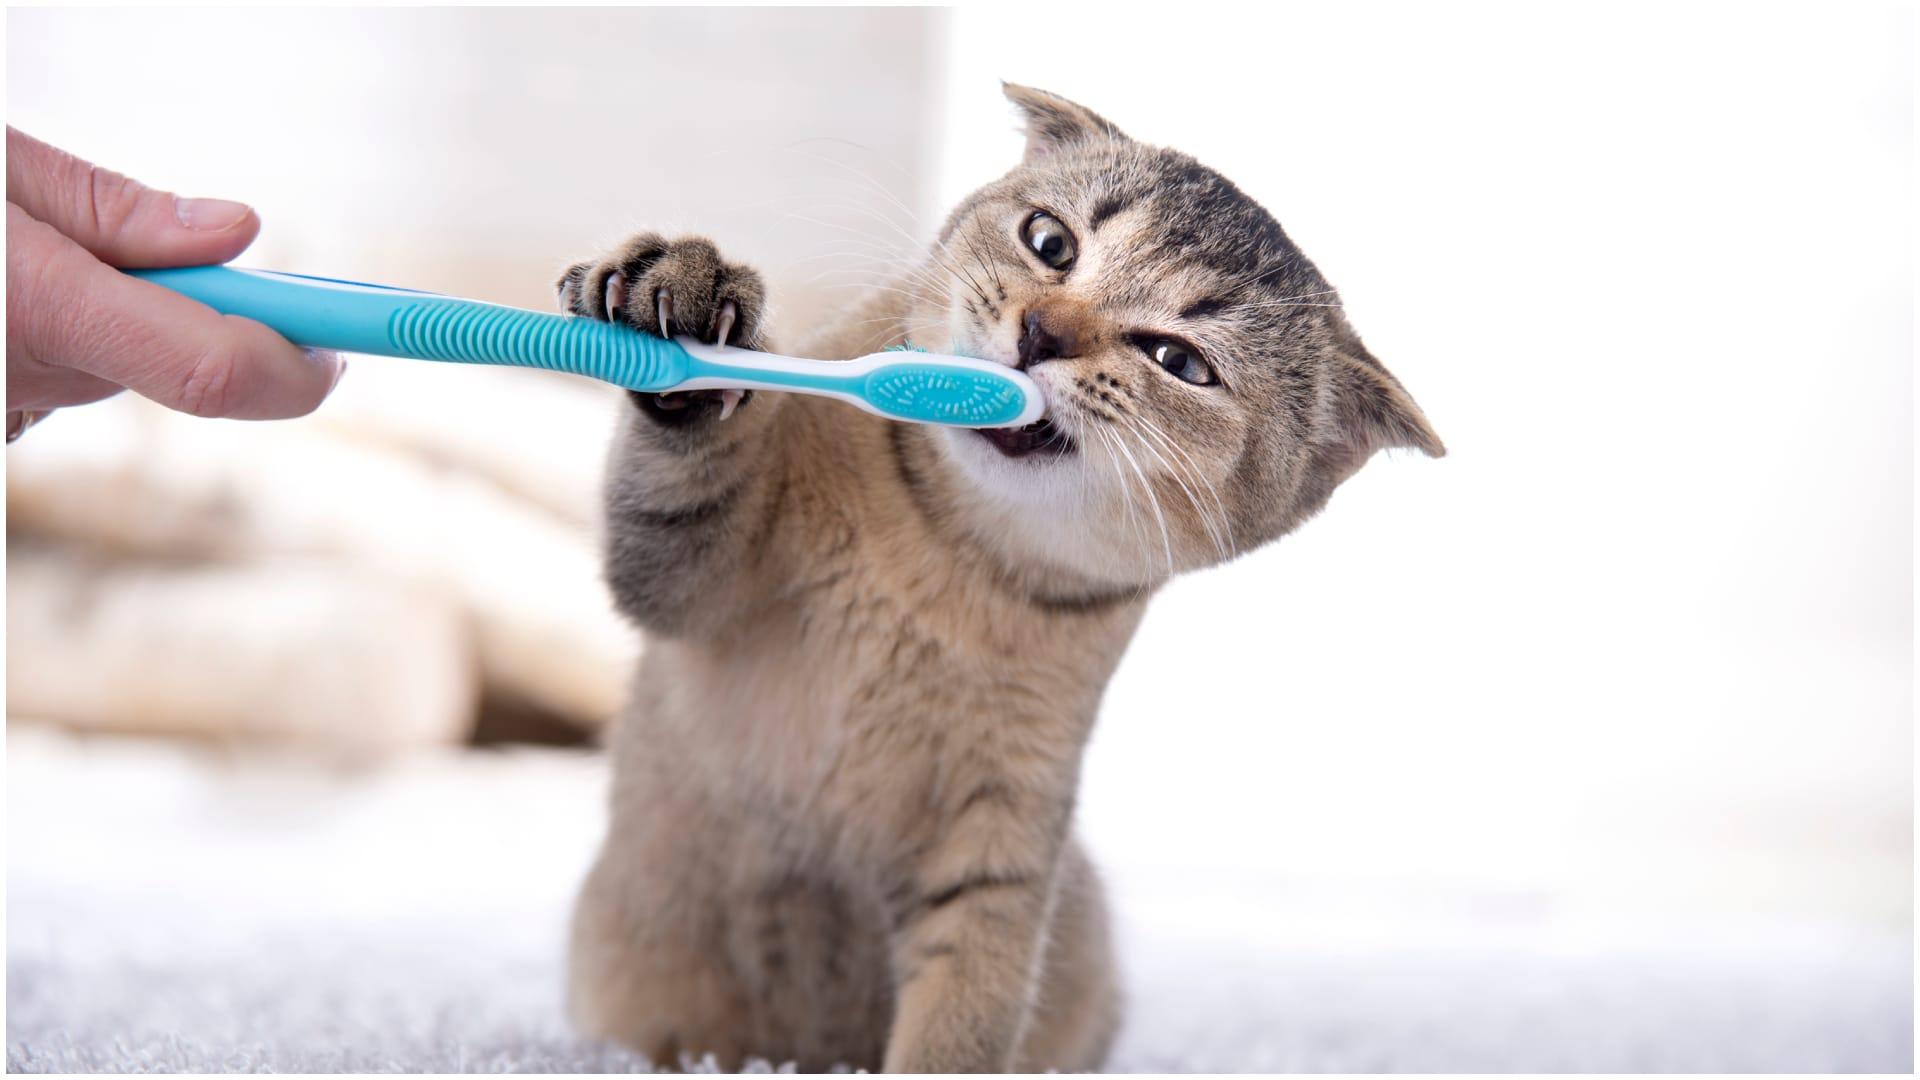 Cepillado de dientes a un gato (foto: Shutterstock)